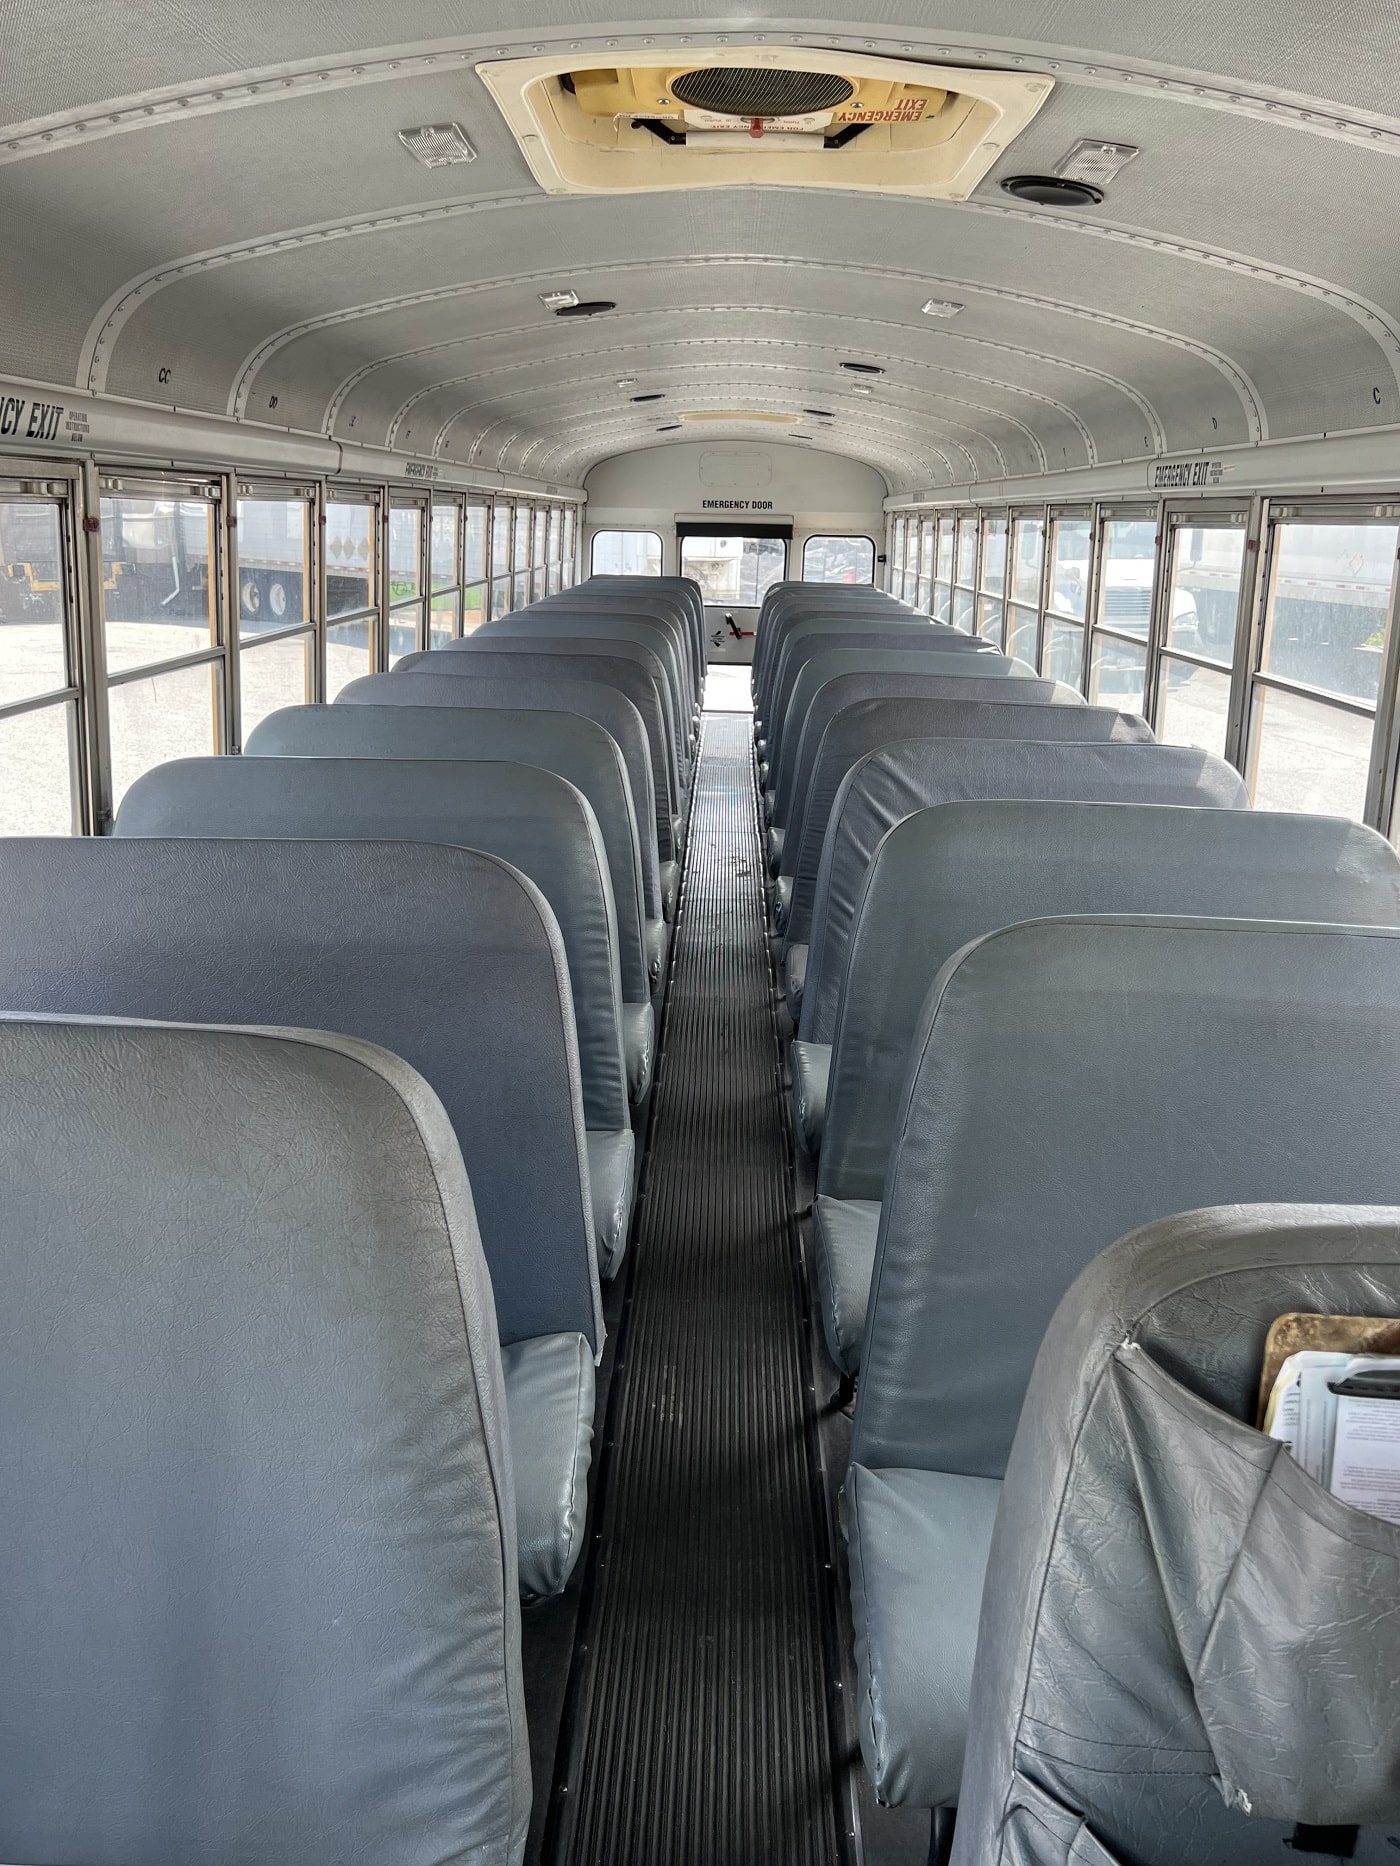 vancouver school bus